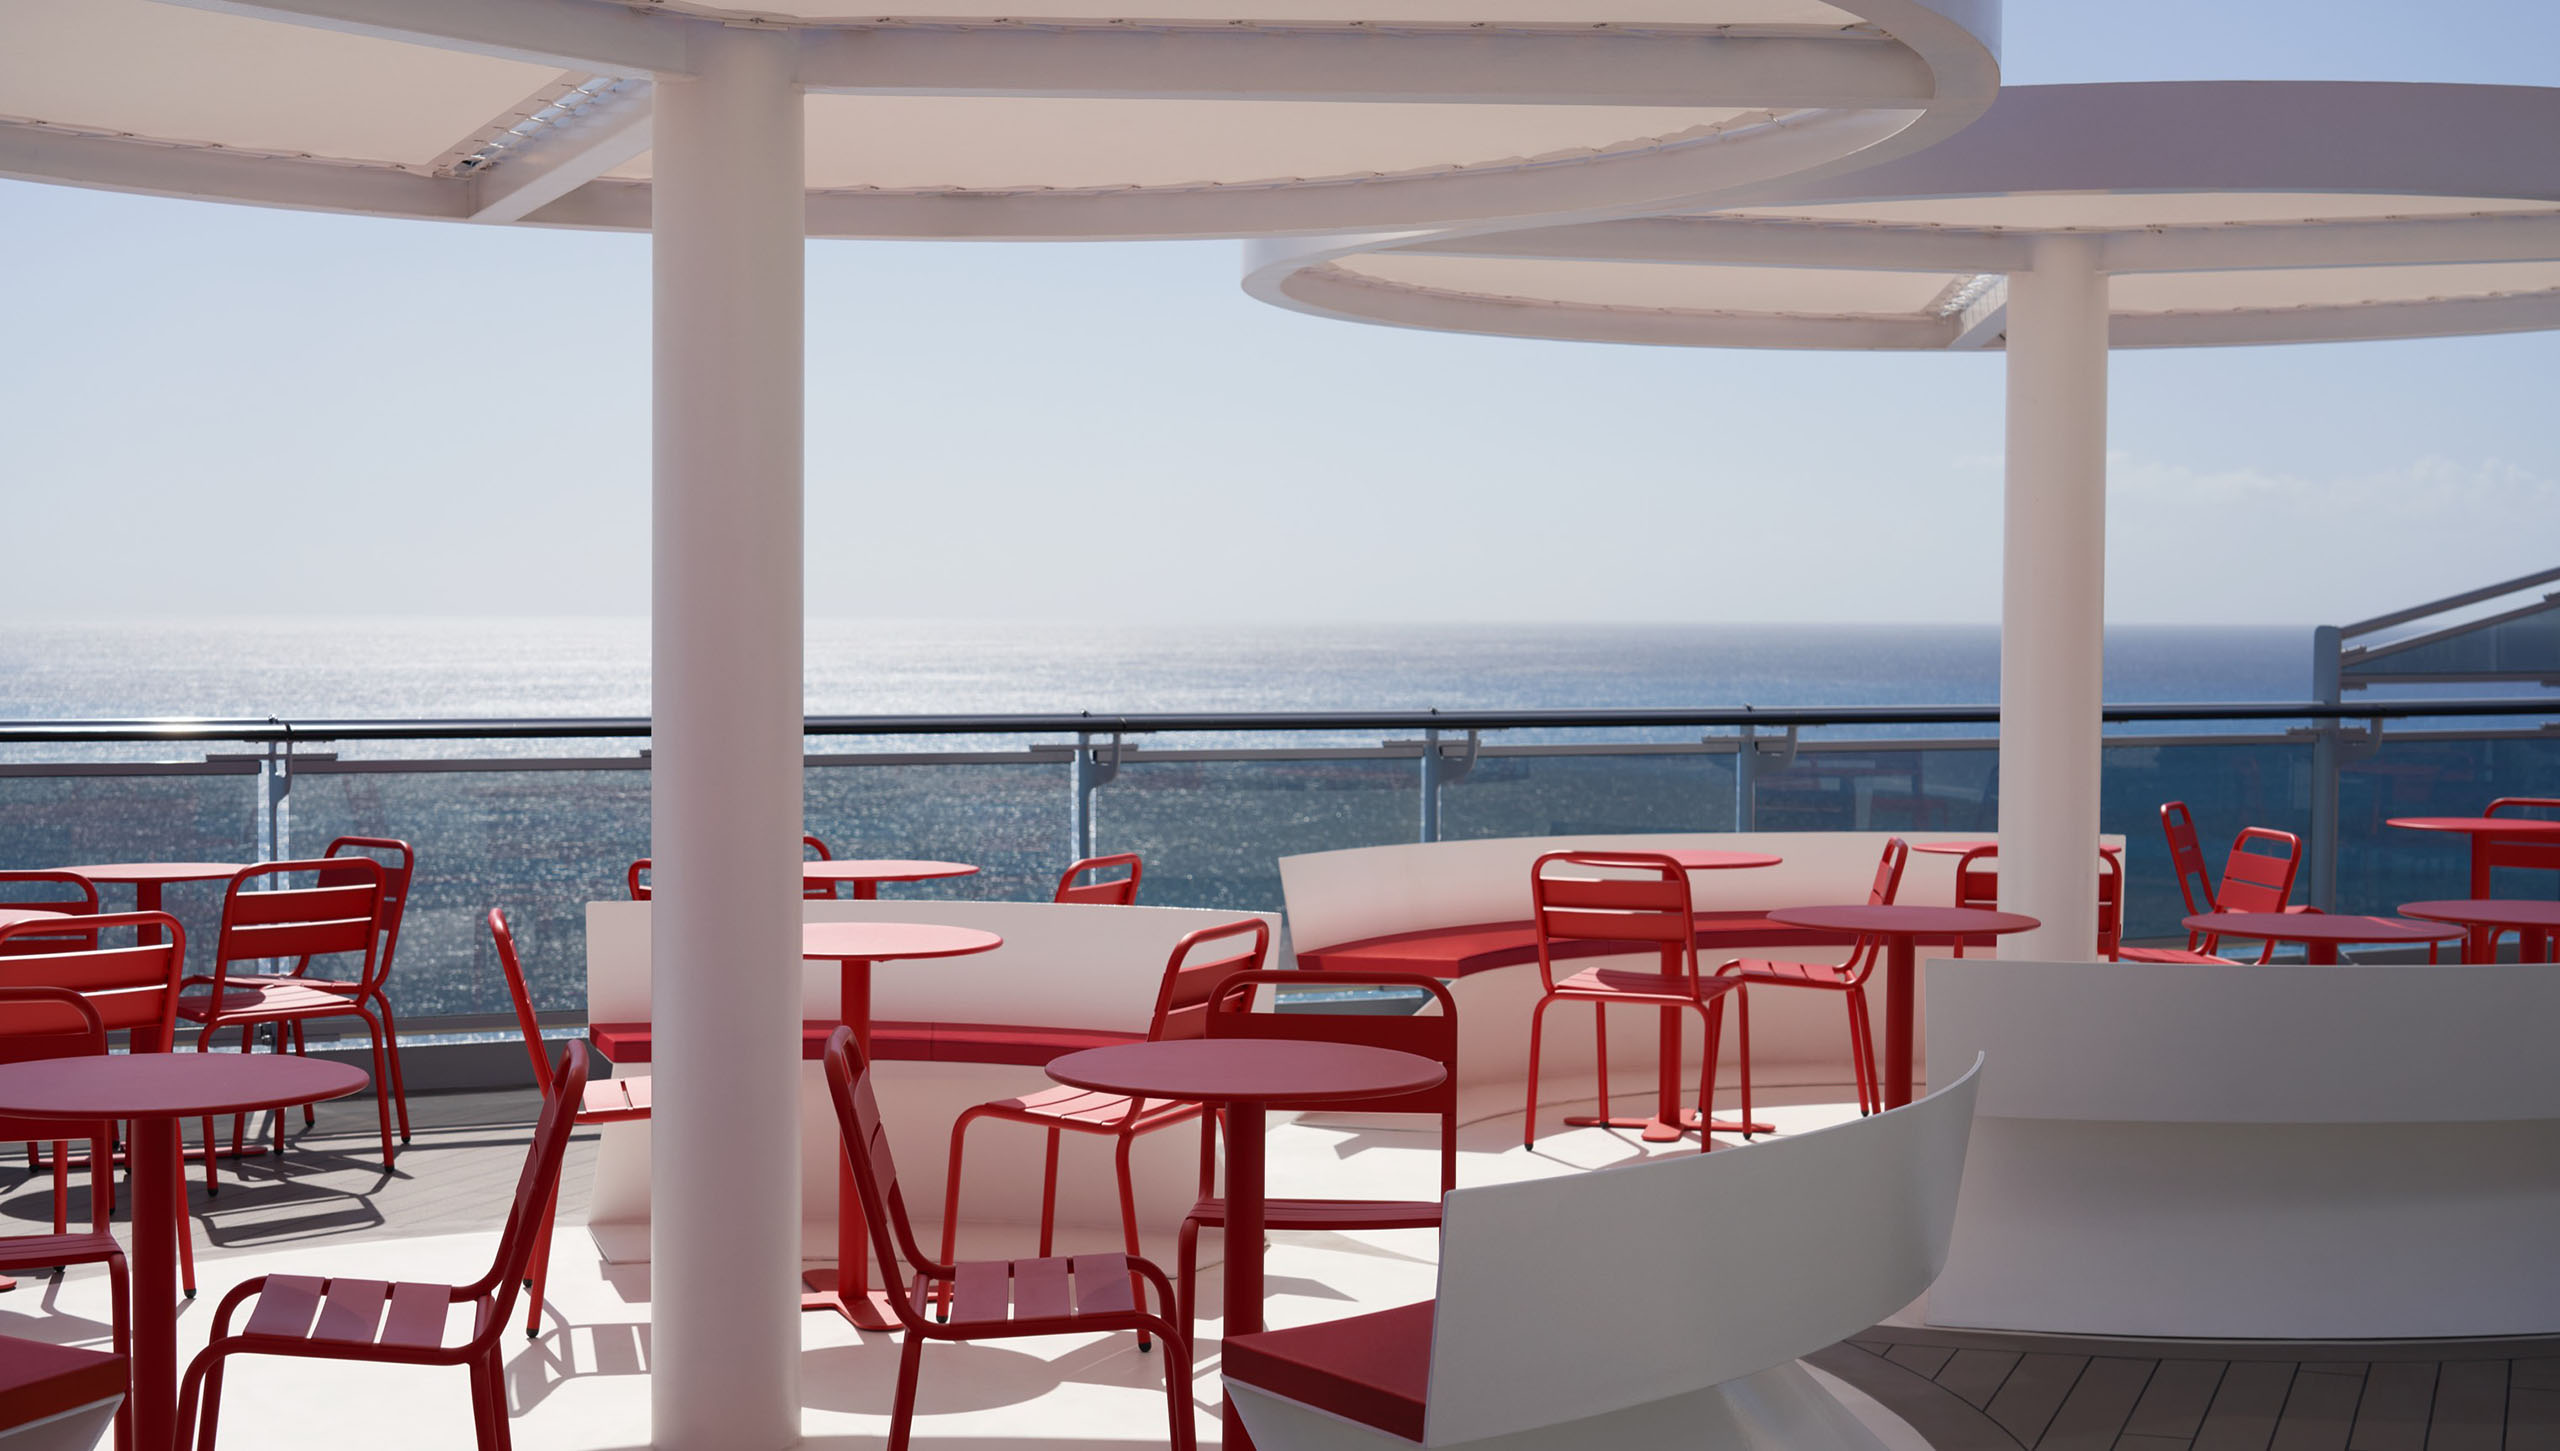 GEM Design for Cruise Ships - Virgin Voyages